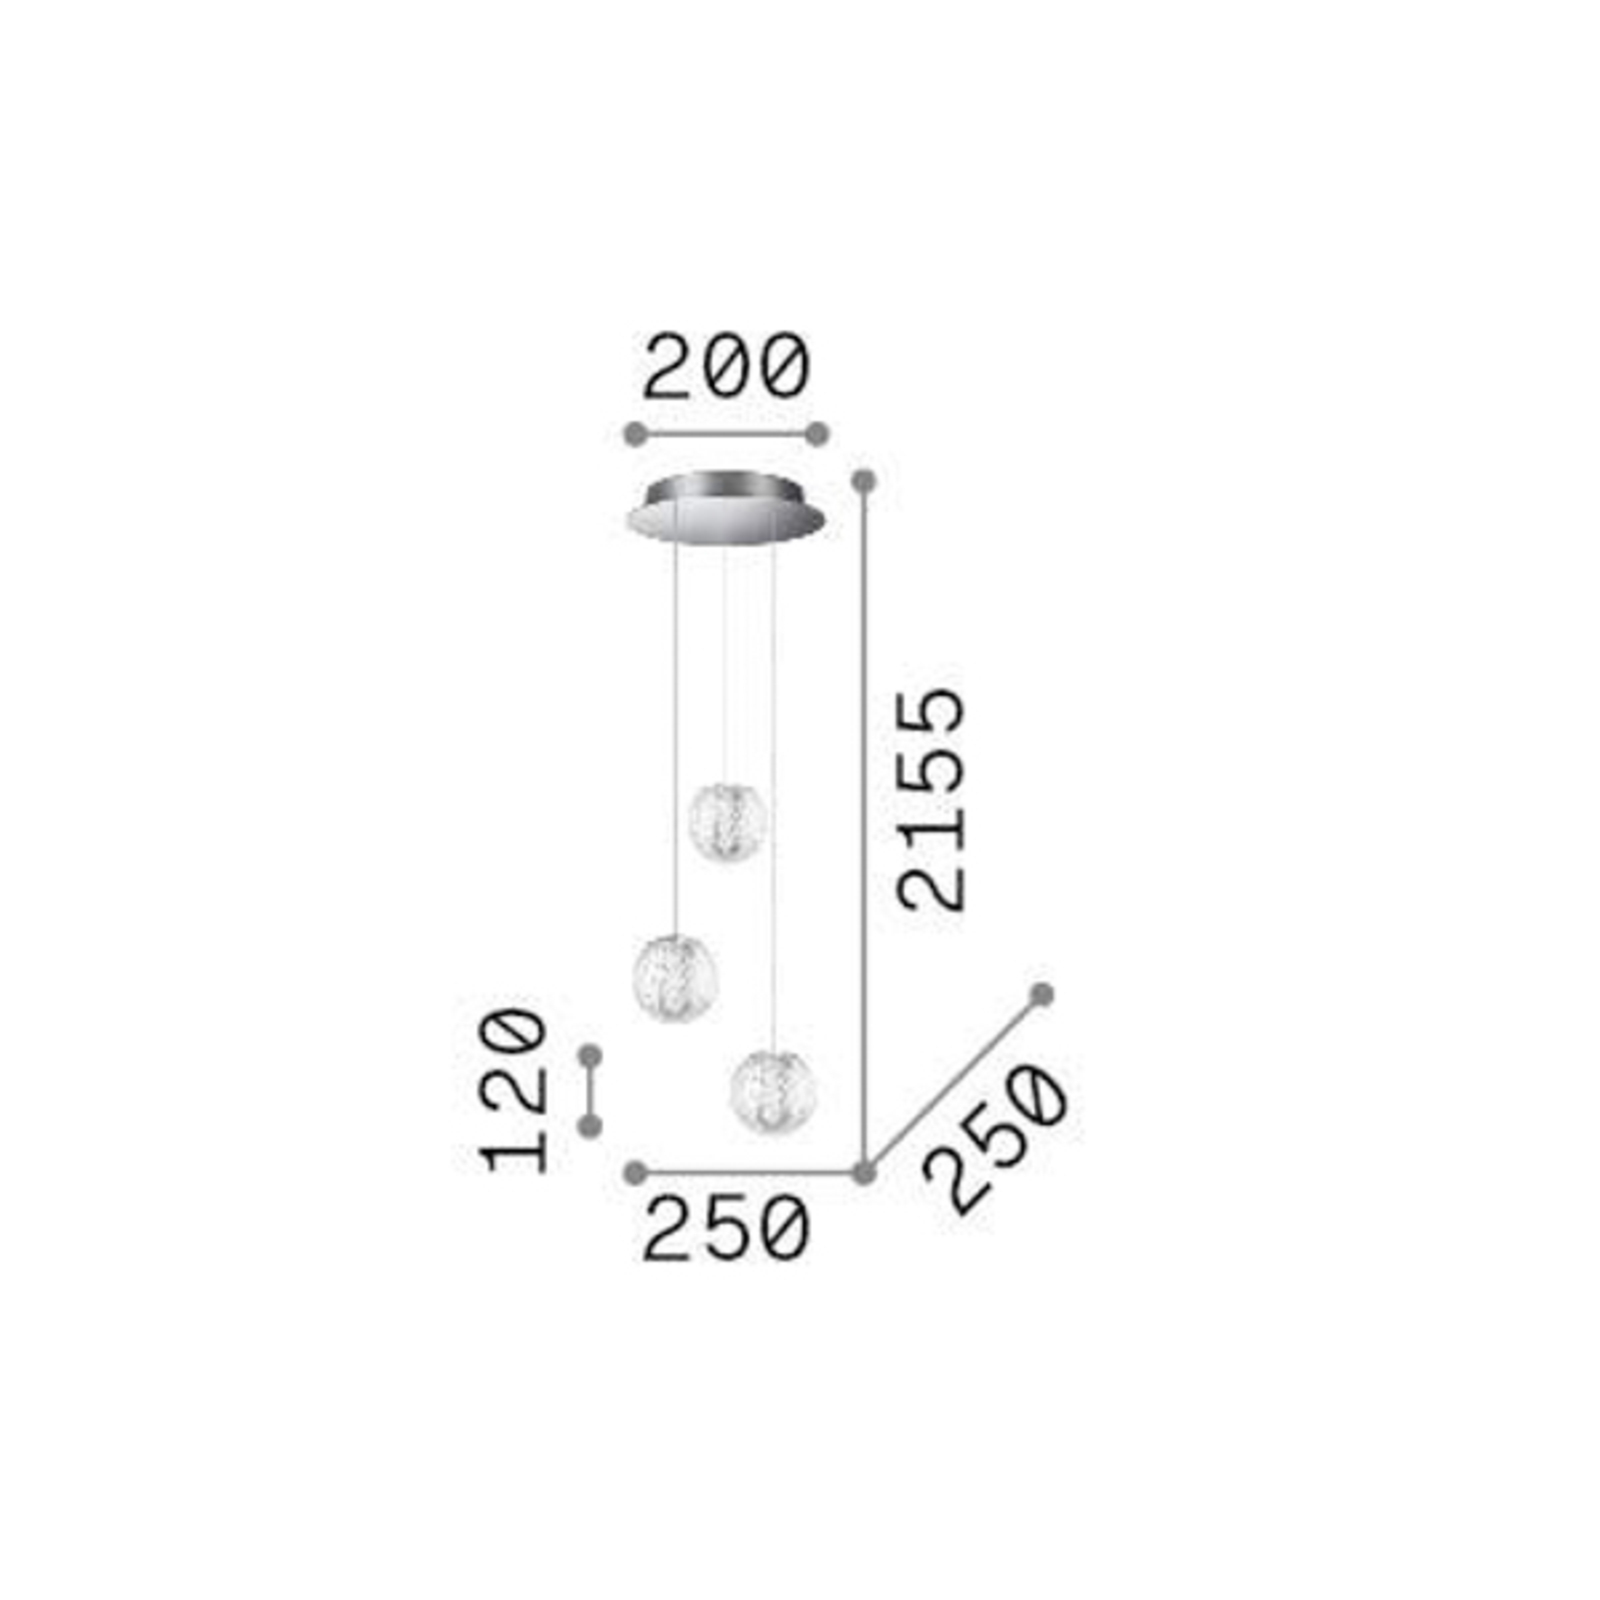 Ideal Lux suspension LED Diamond à 3 lampes, chromé/clair